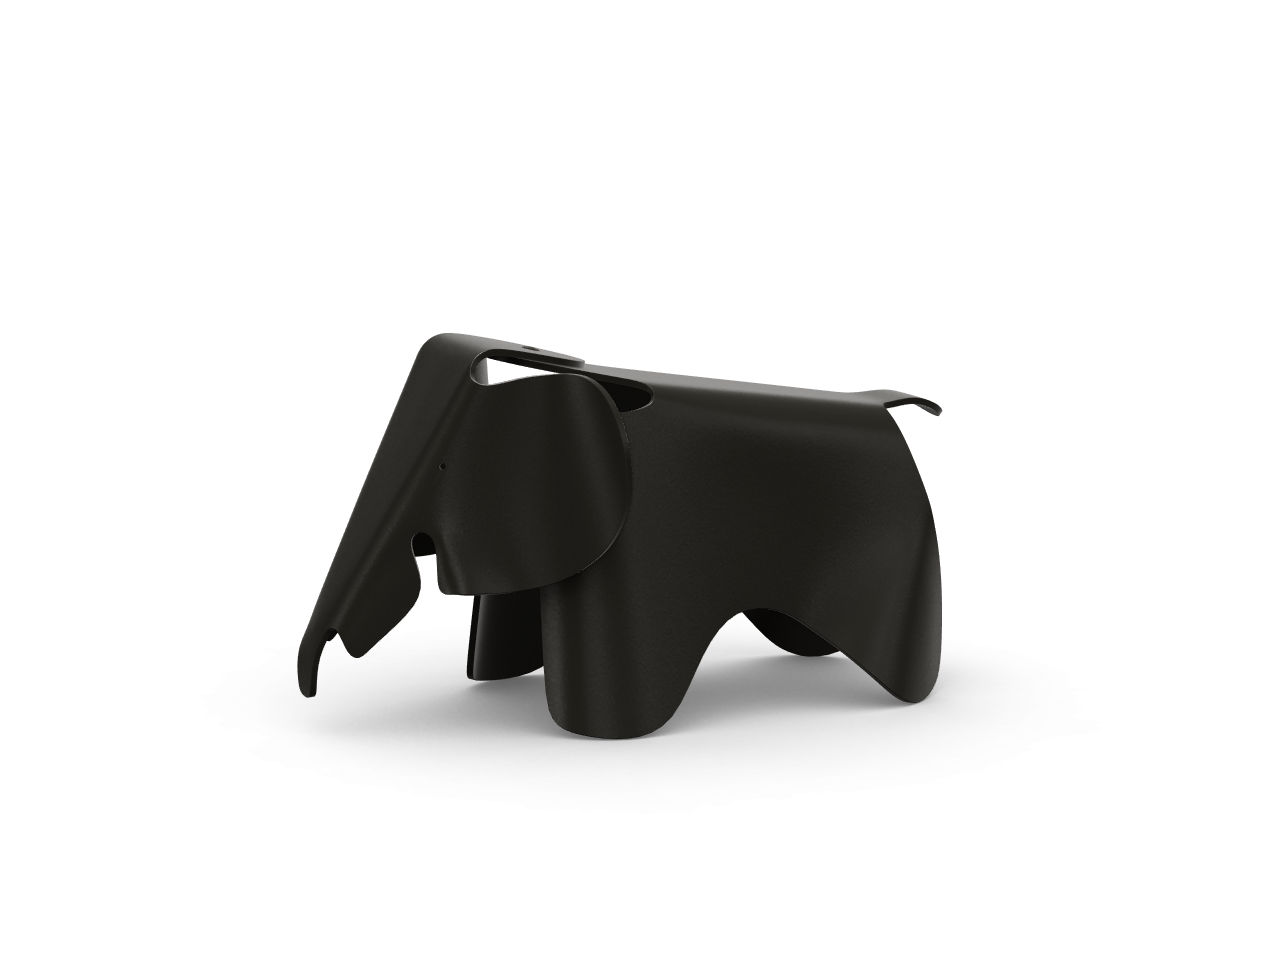 Elephant ist ein von Vitra hergestellter Kinderstuhl, der von Charles und Ray Eames entworfen und von Peverelli angeboten wird.